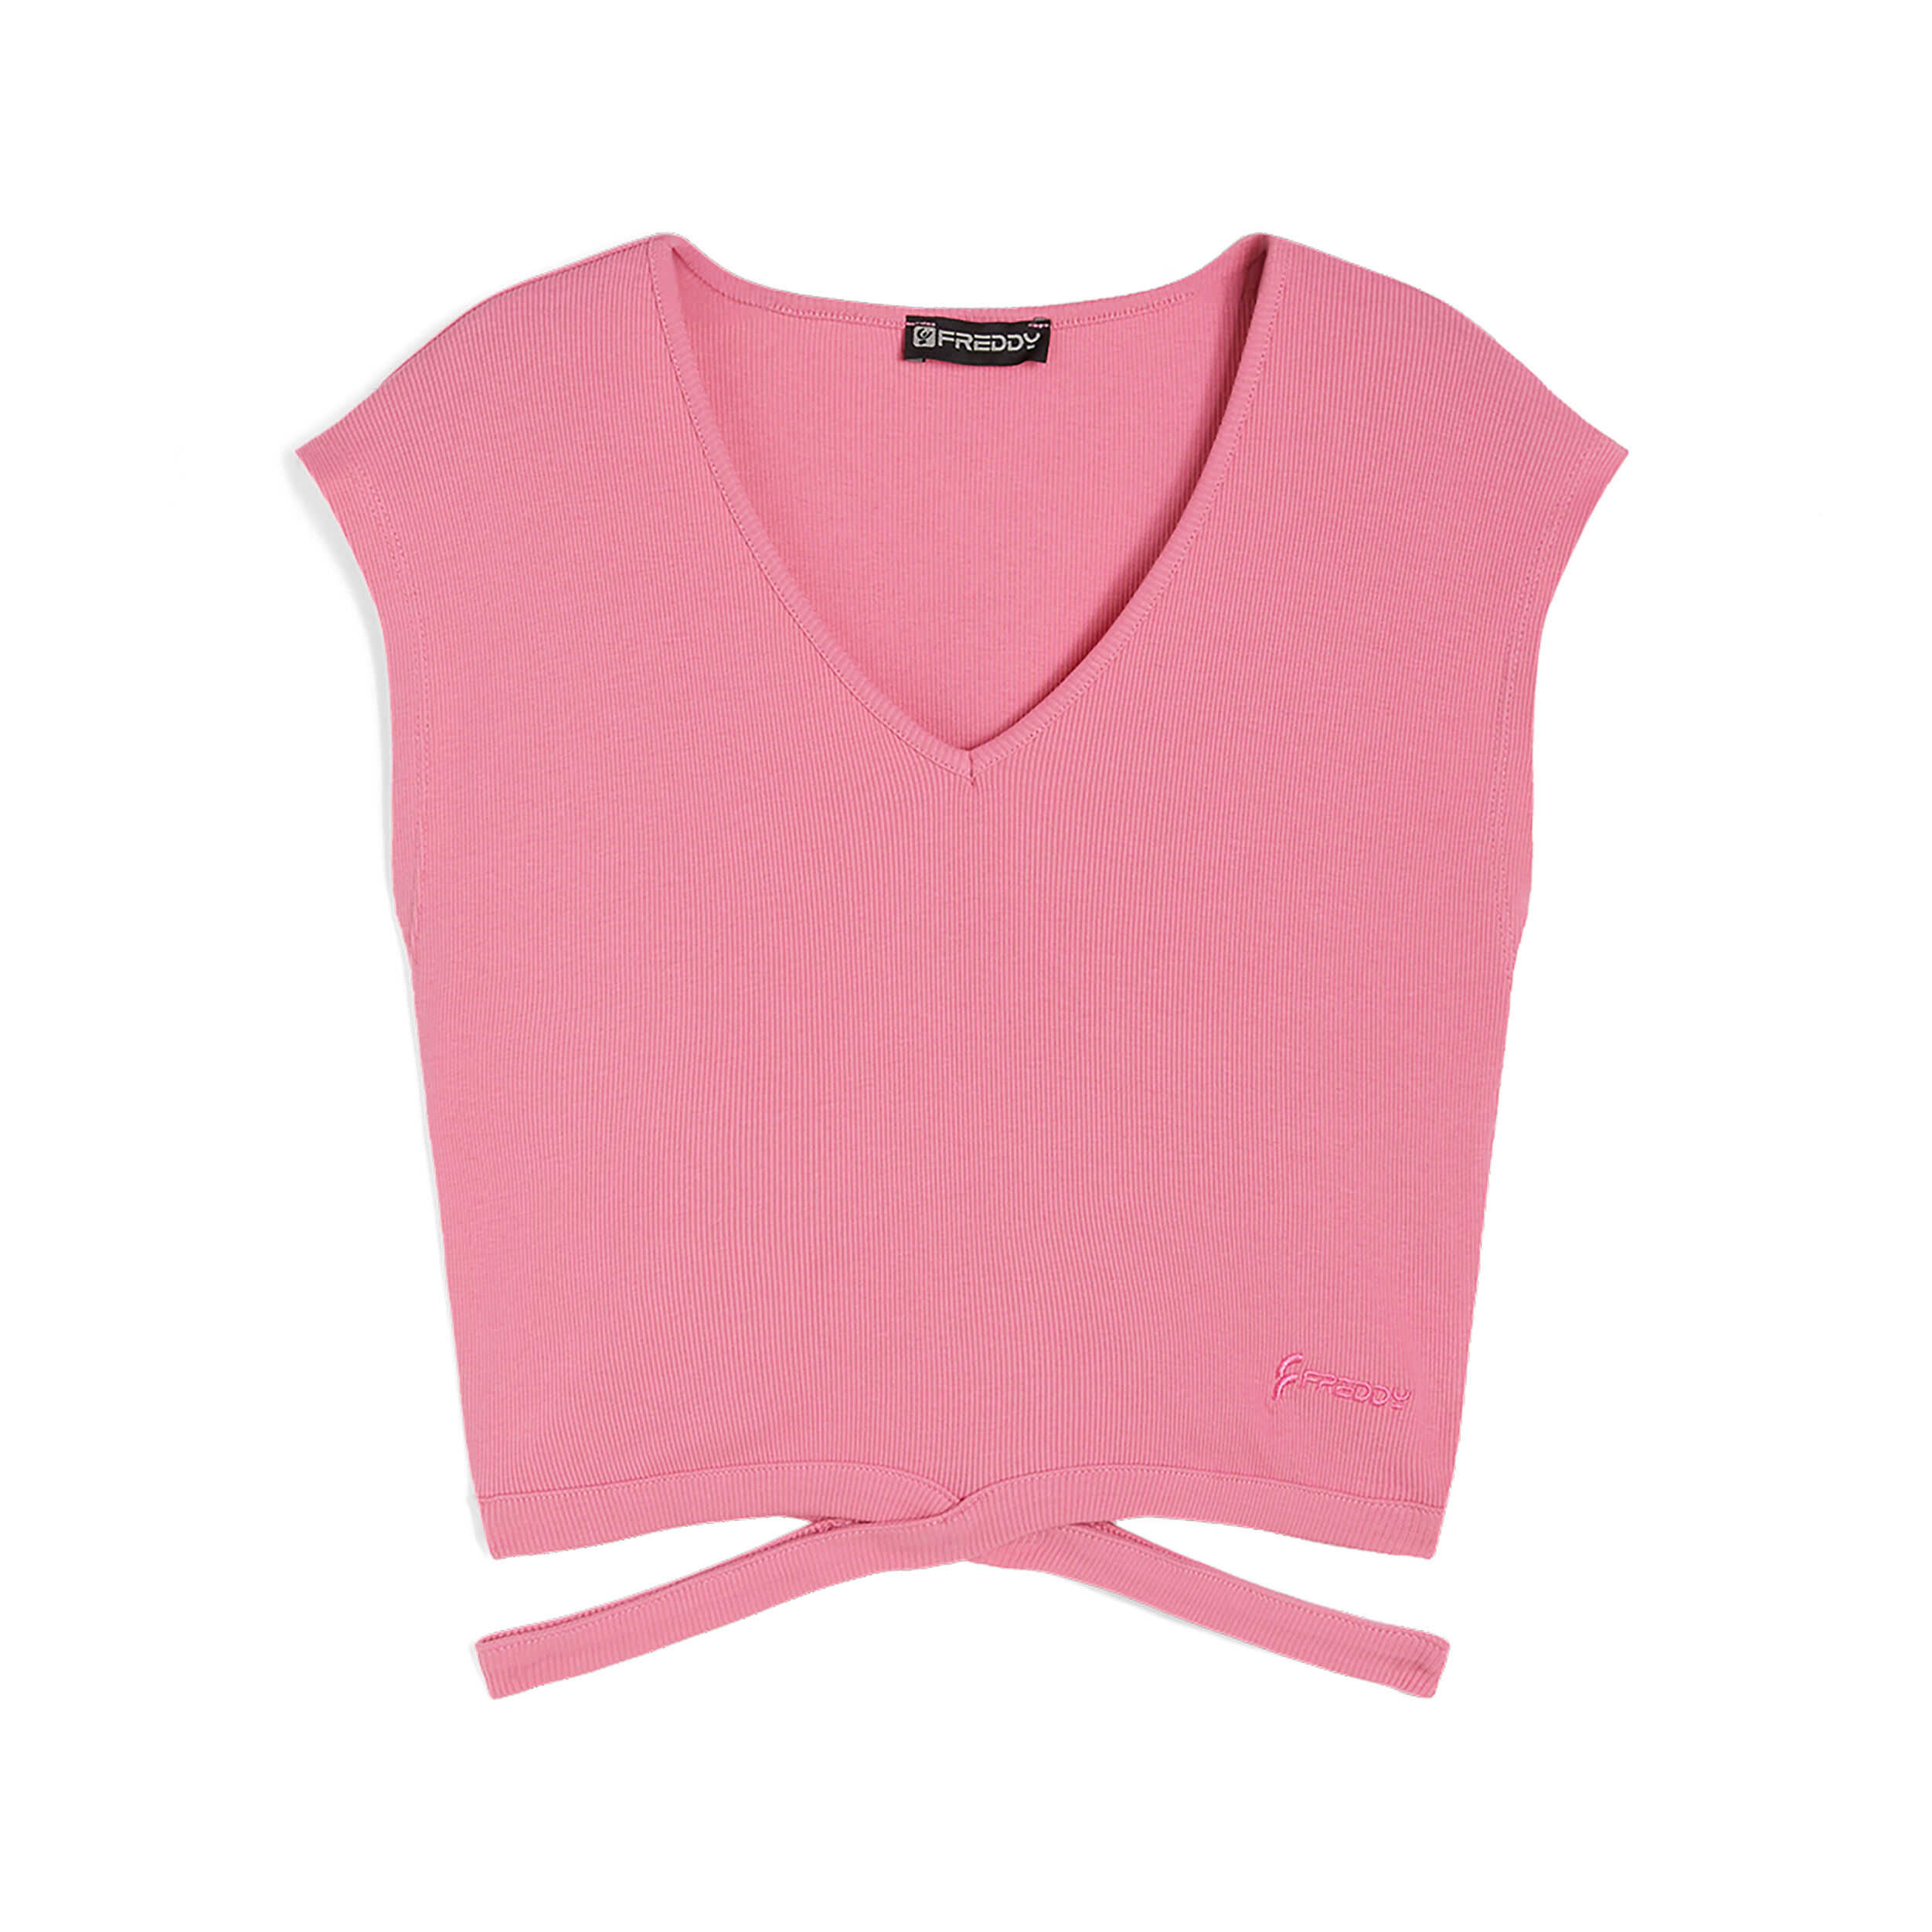 Freddy T-shirt slim fit in costina con gioco di incroci sul fondo Pink Carnation Donna Small